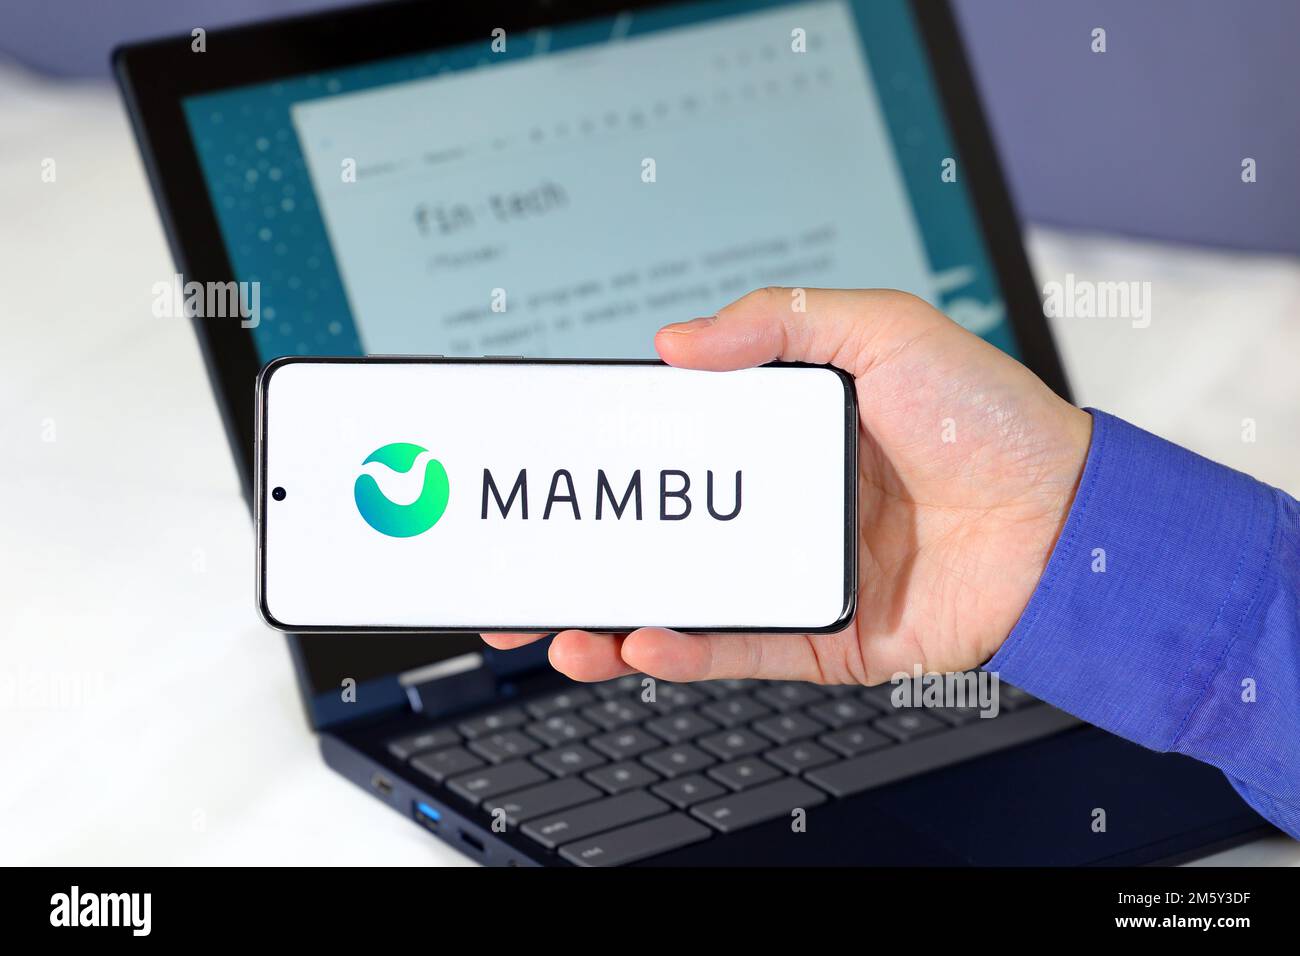 Logo de Mambu sur un smartphone devant un ordinateur. Mambu est une société de technologie spécialisée dans les logiciels de banque en nuage en tant que service. Banque D'Images